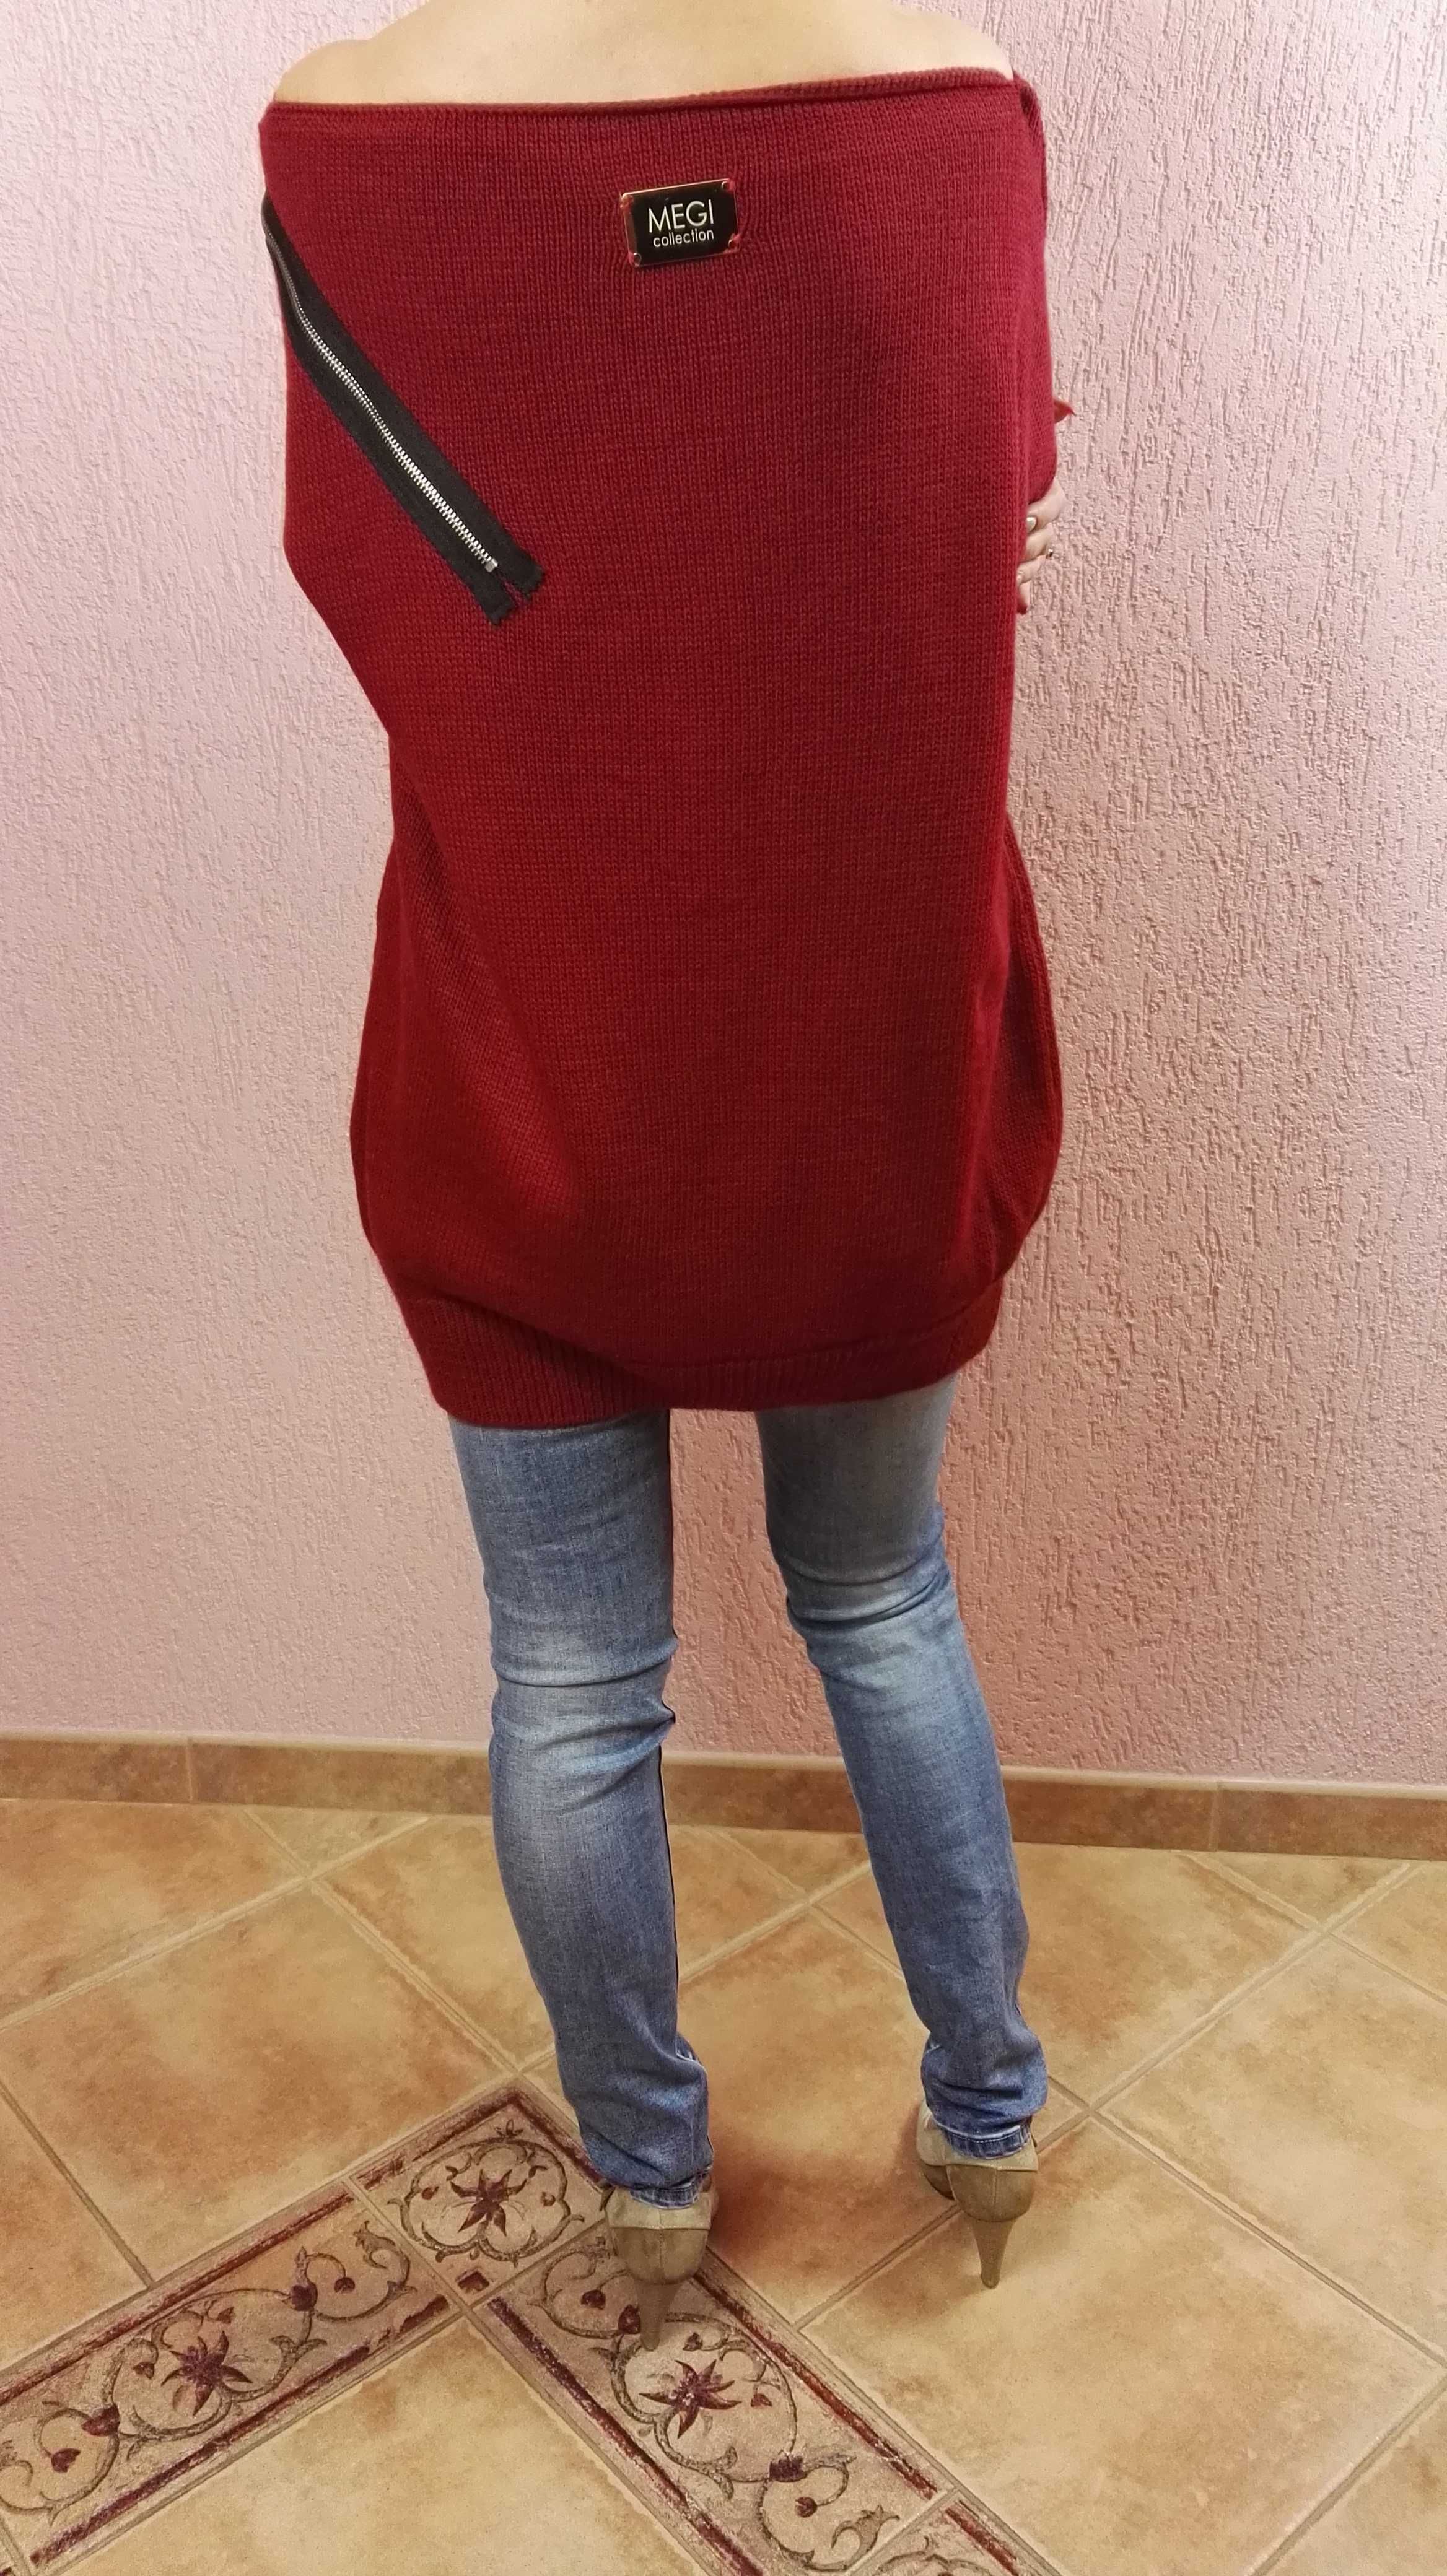 Damski sweterek bordowy Megi  rozmiar uniwersalny Nowy.